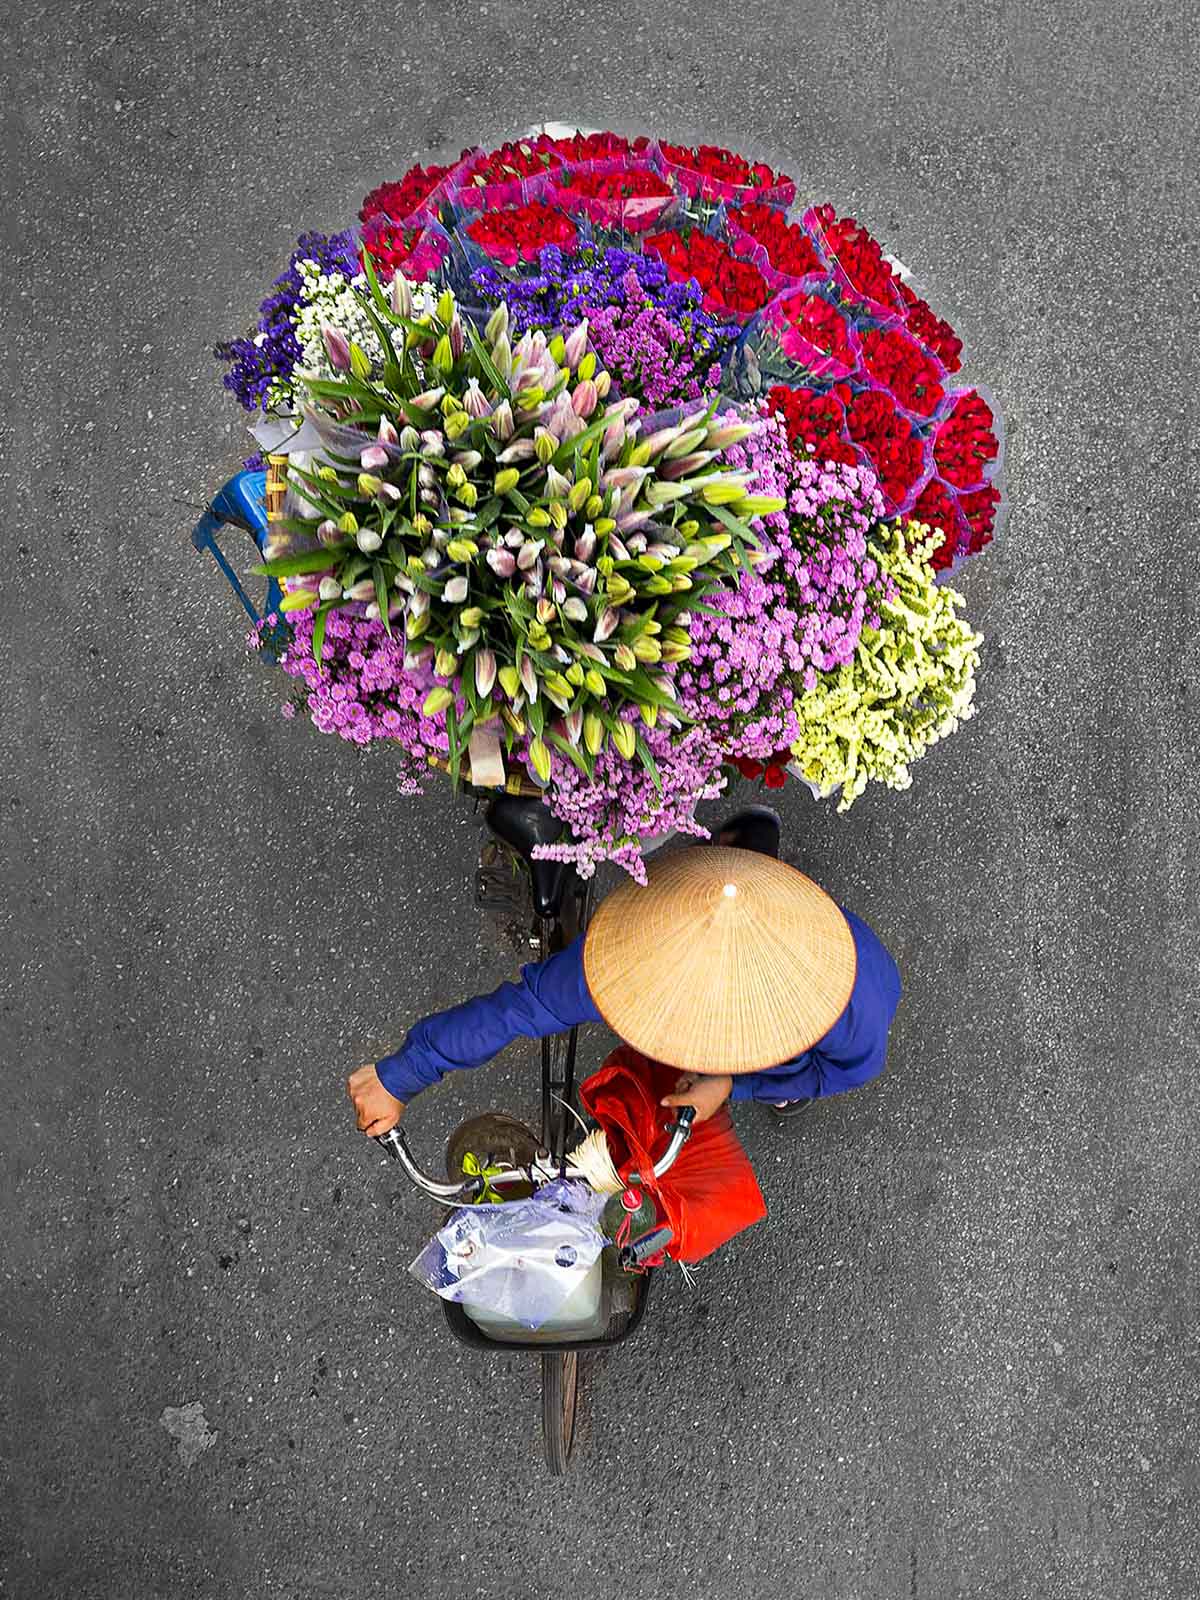 Flower Merchants in Motion 01